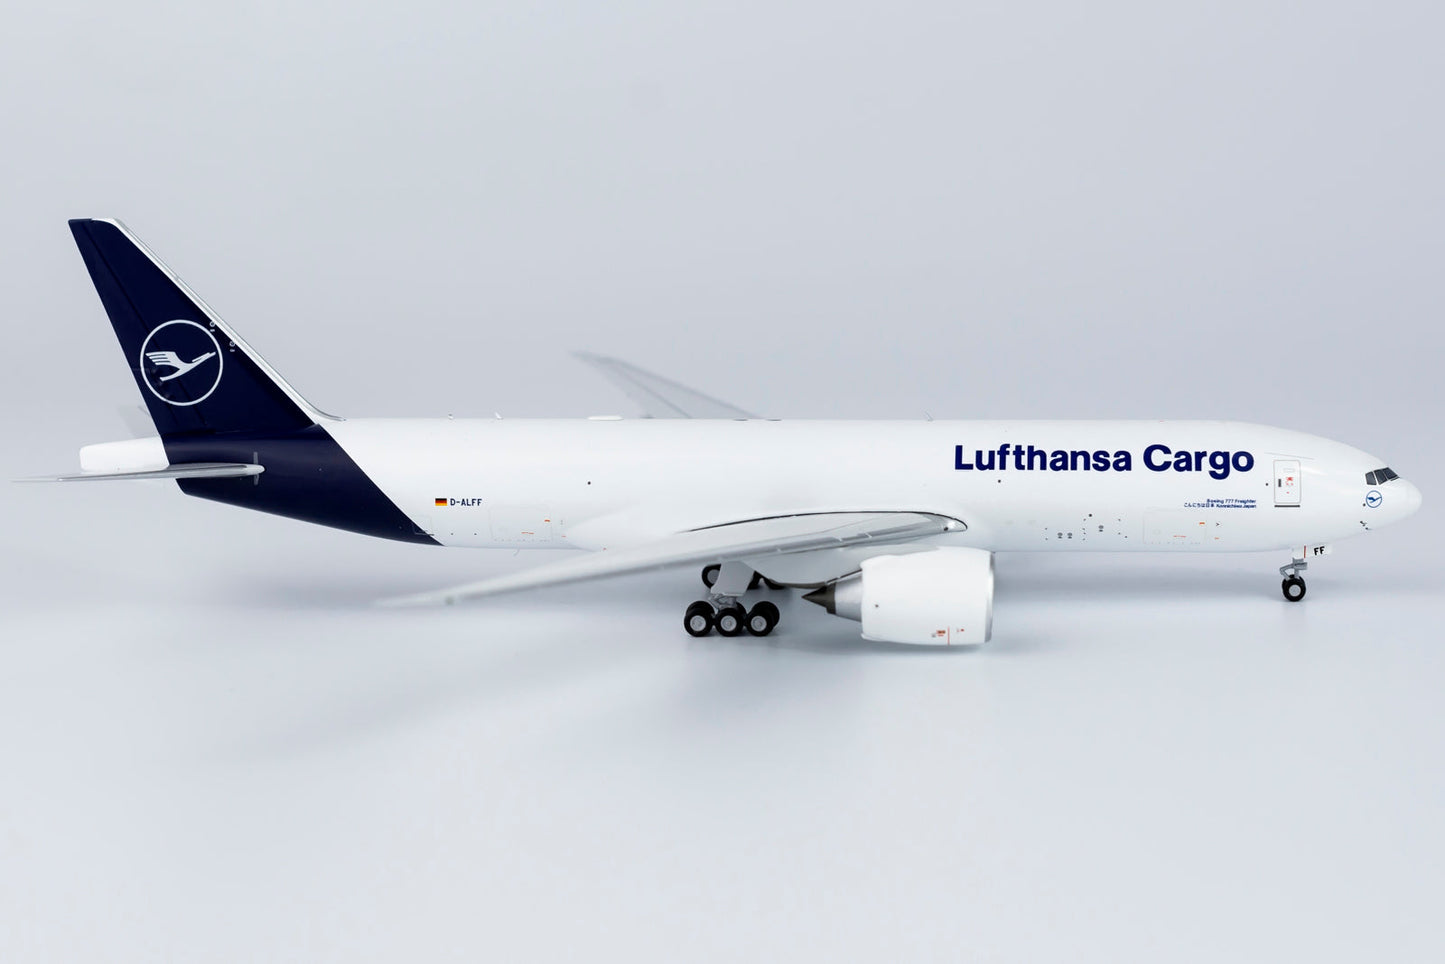 1/400 Lufthansa Cargo B 777F NG Models 72003